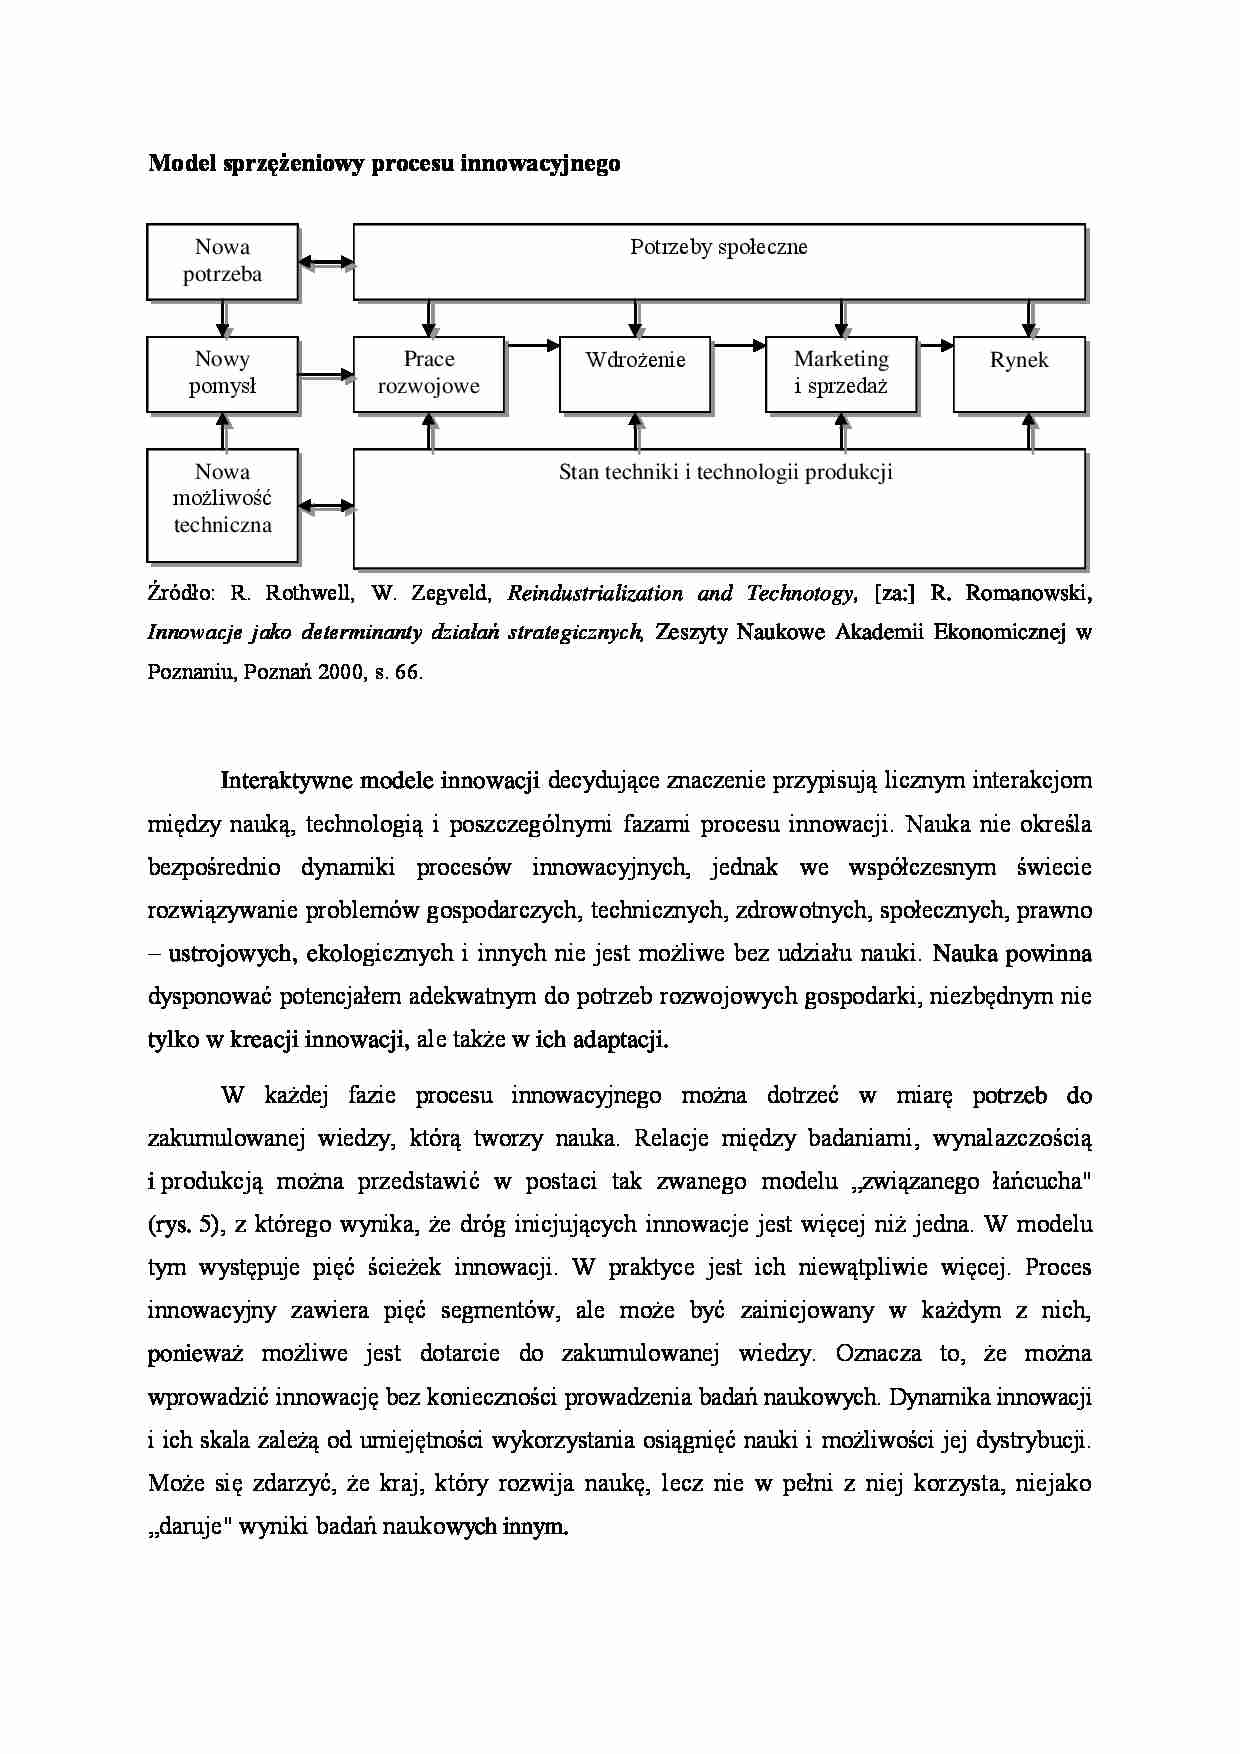 Model sprzężeniowy procesu innowacyjnego - wykład - strona 1